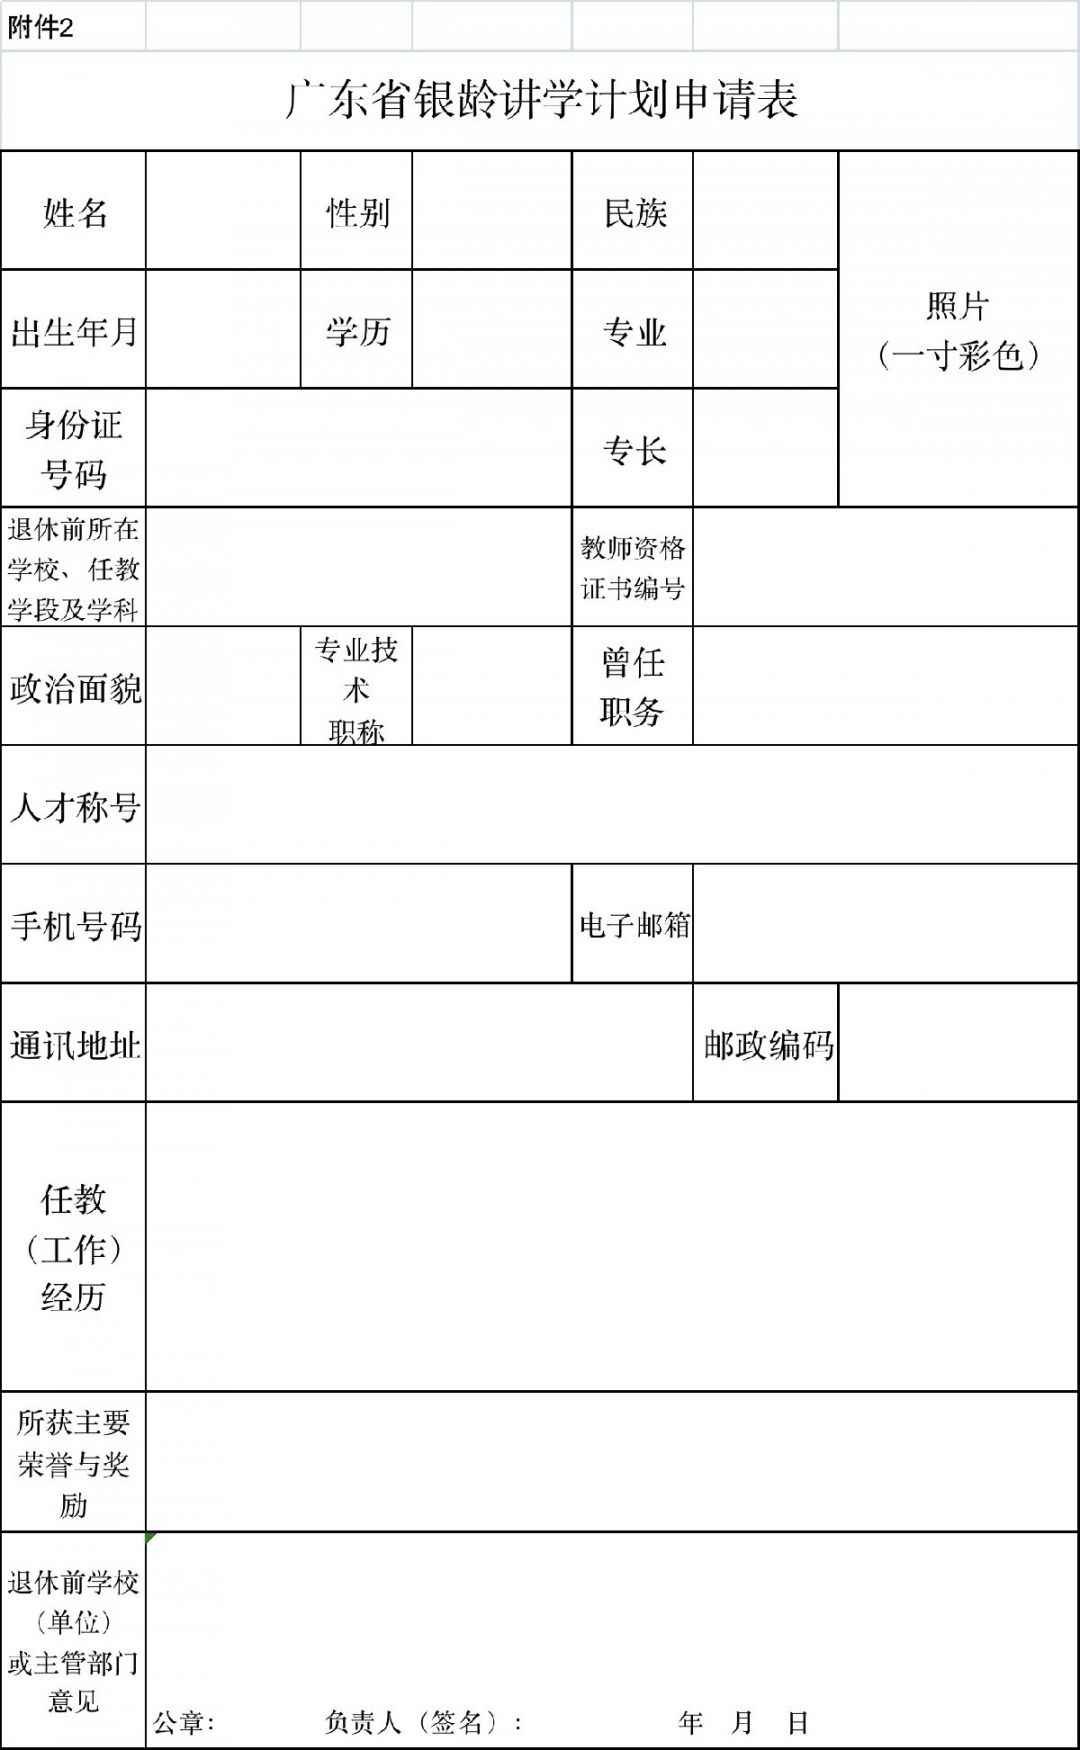 广东省银龄讲学计划申请表下载入口